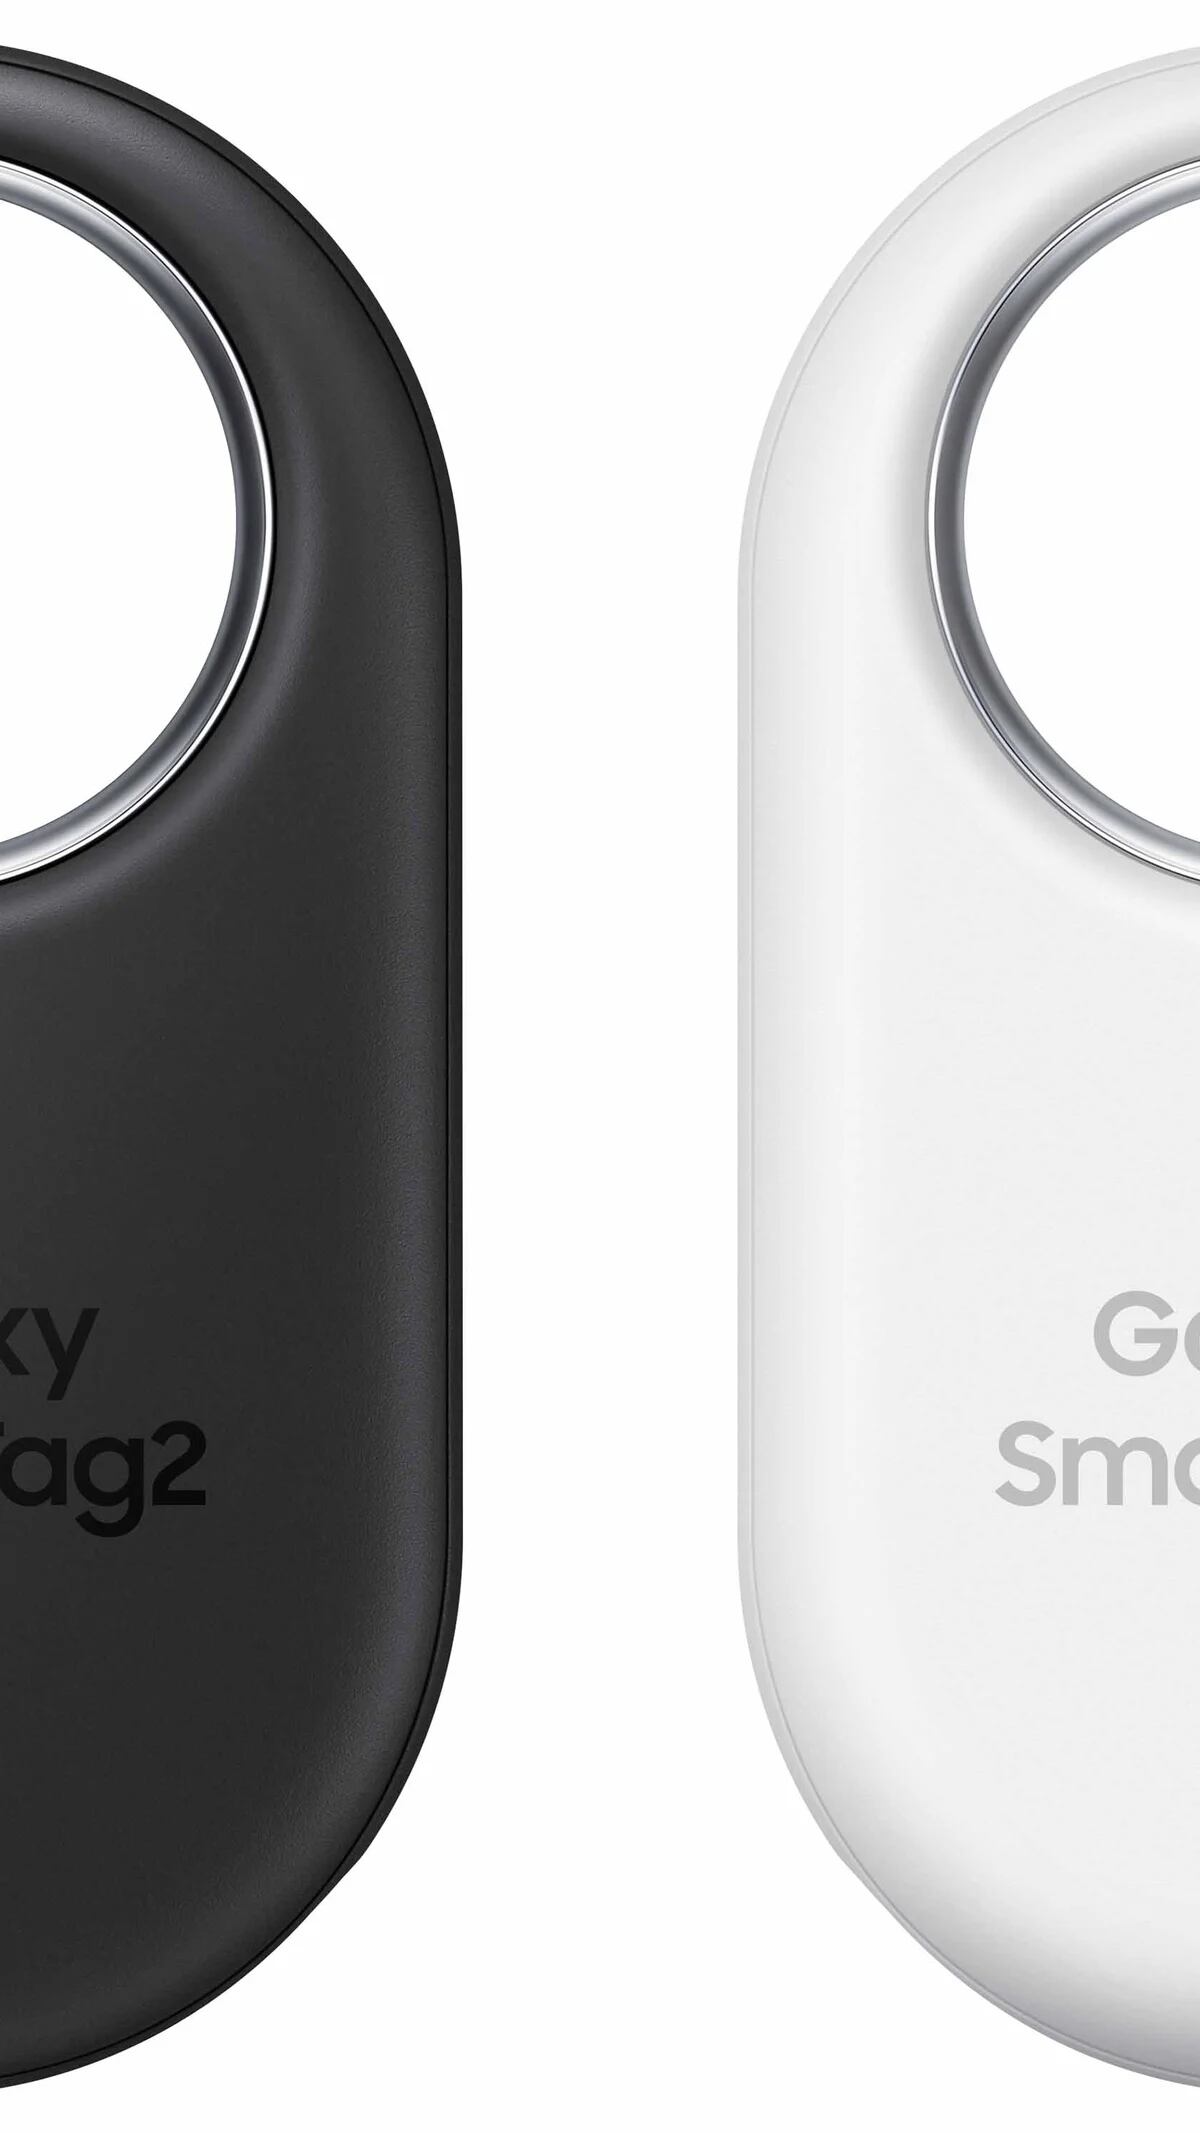 Análisis de Galaxy SmartTag 2, la nueva etiqueta rastreadora de Samsung